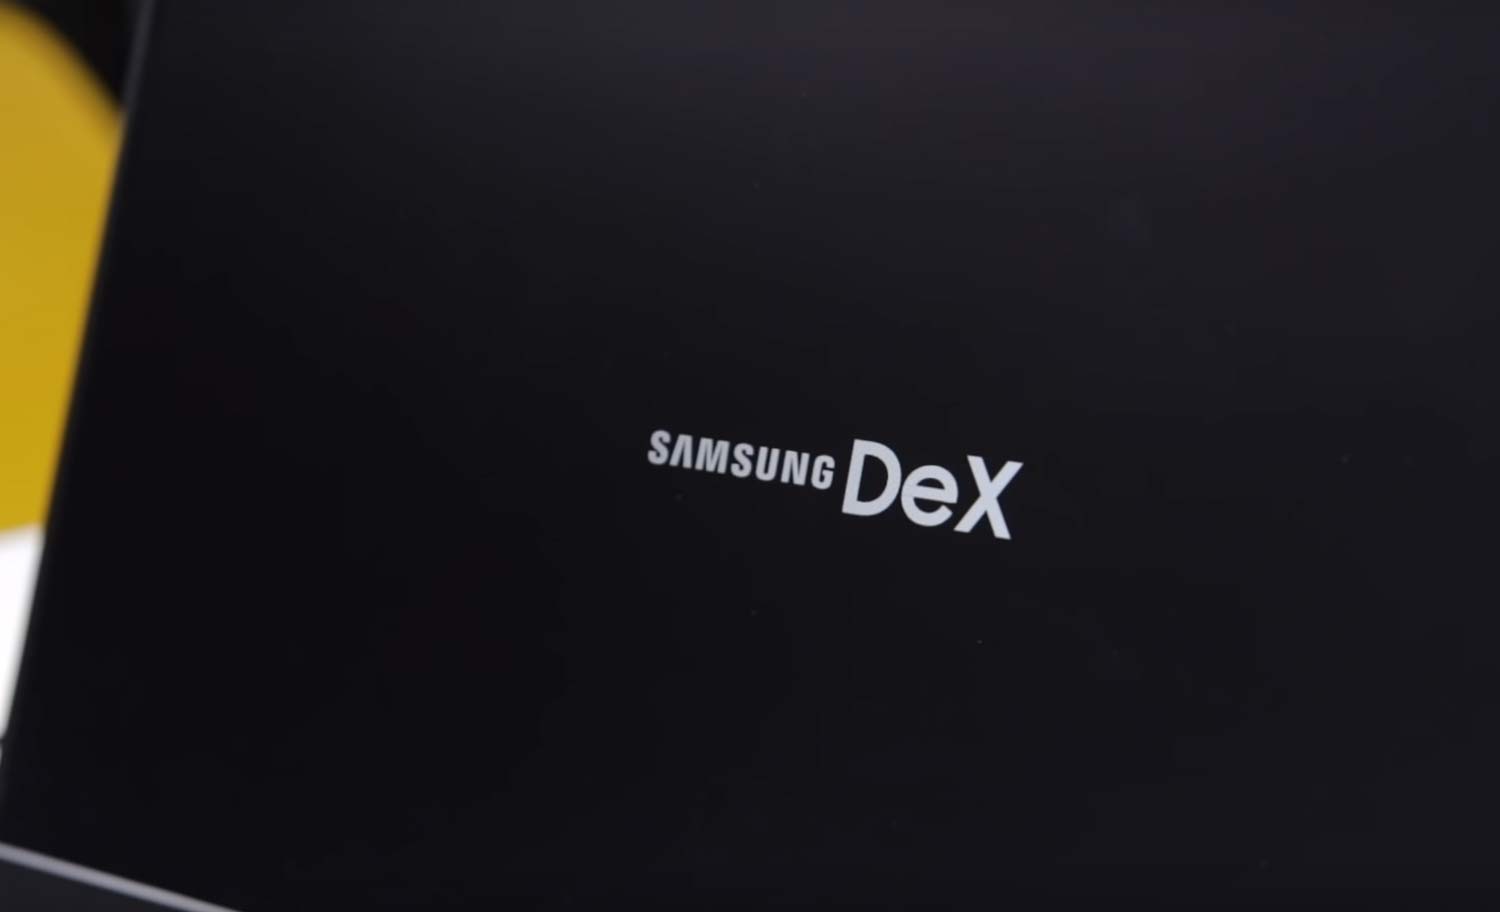 samsung dex download windows 10